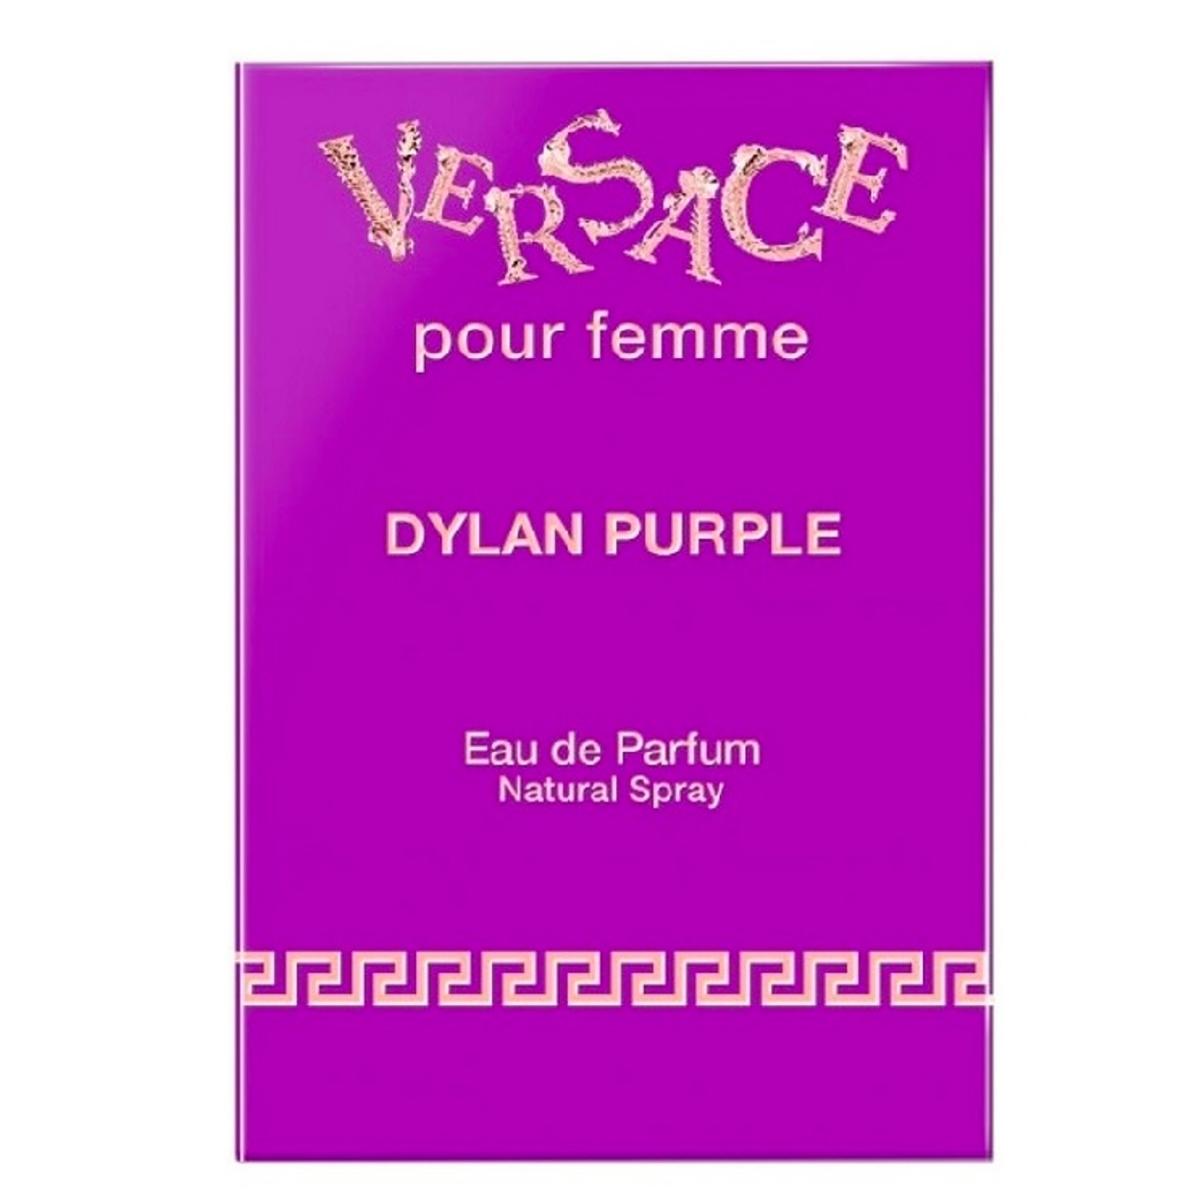 VERSACE DYLAN PURPLE 1 OZ EAU DE PARFUM SPRAY FOR WOMEN